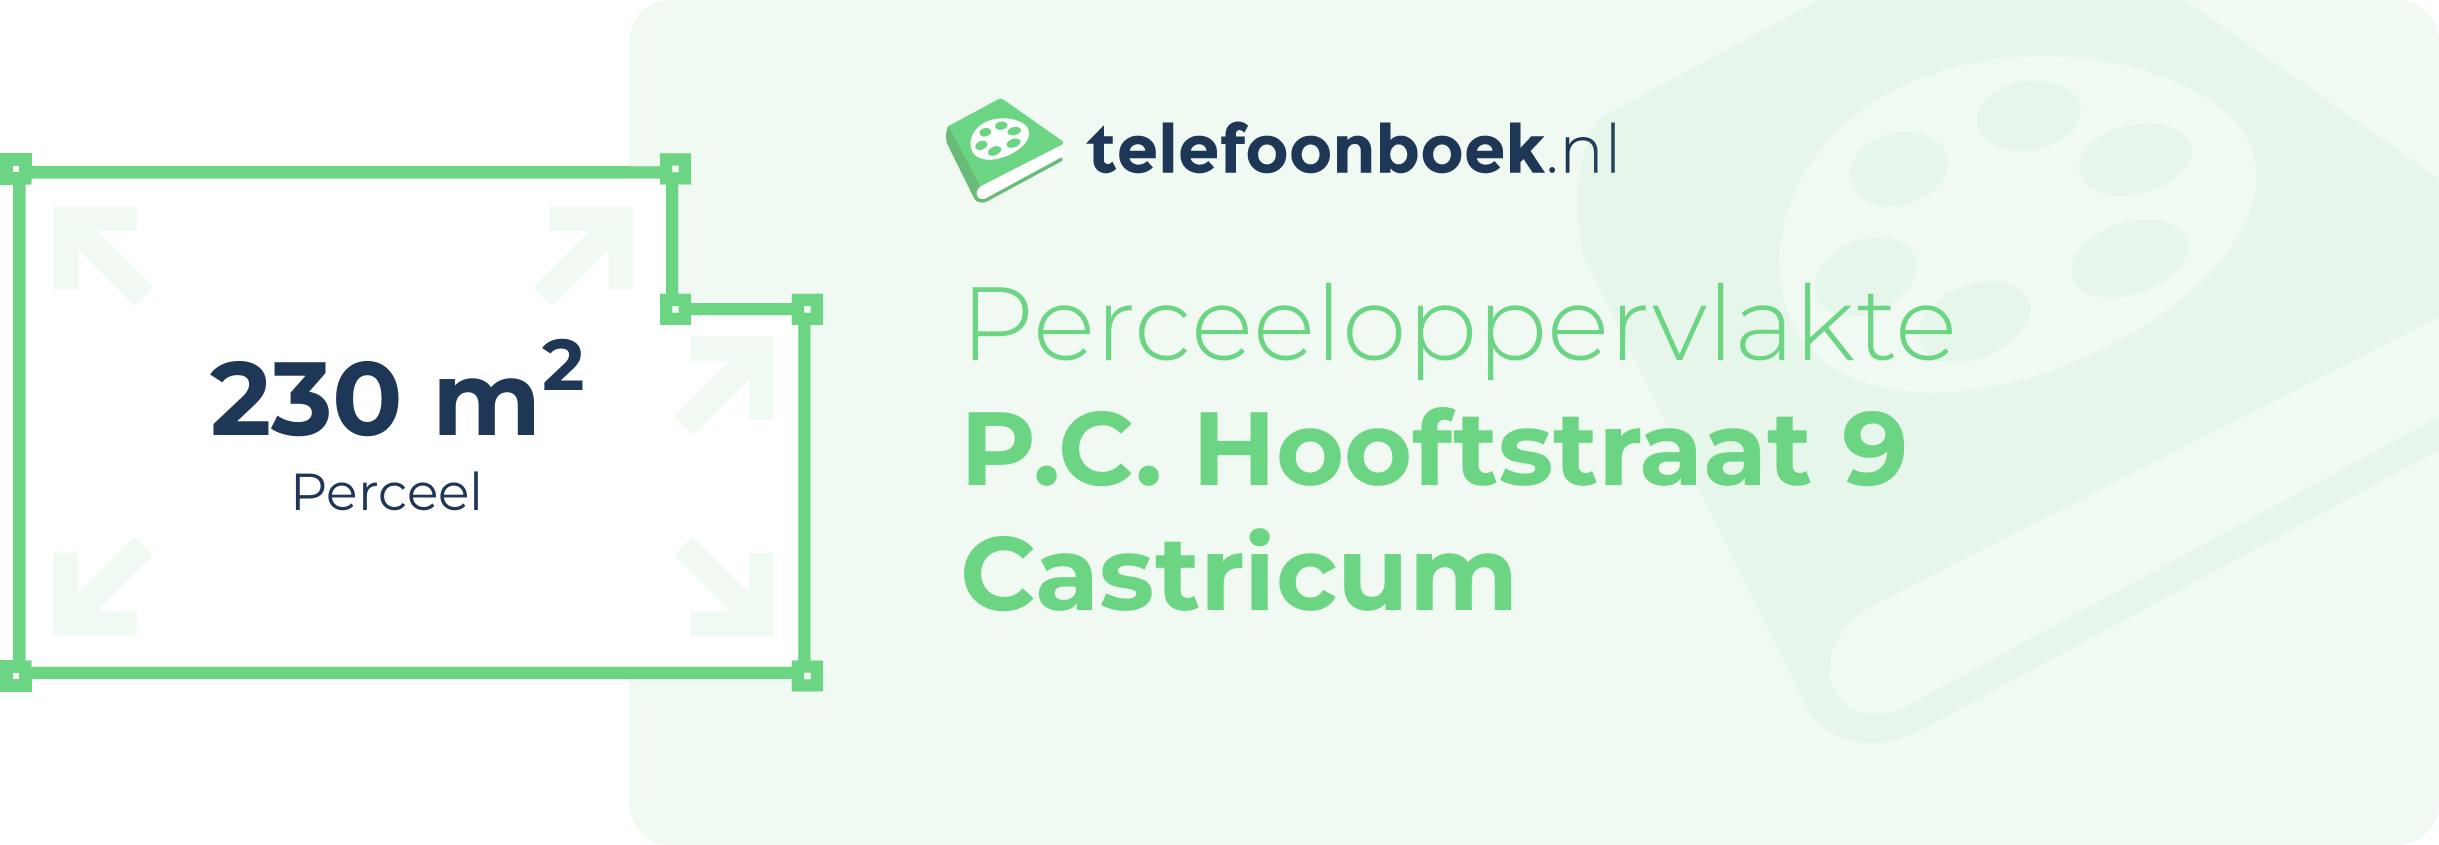 Perceeloppervlakte P.C. Hooftstraat 9 Castricum